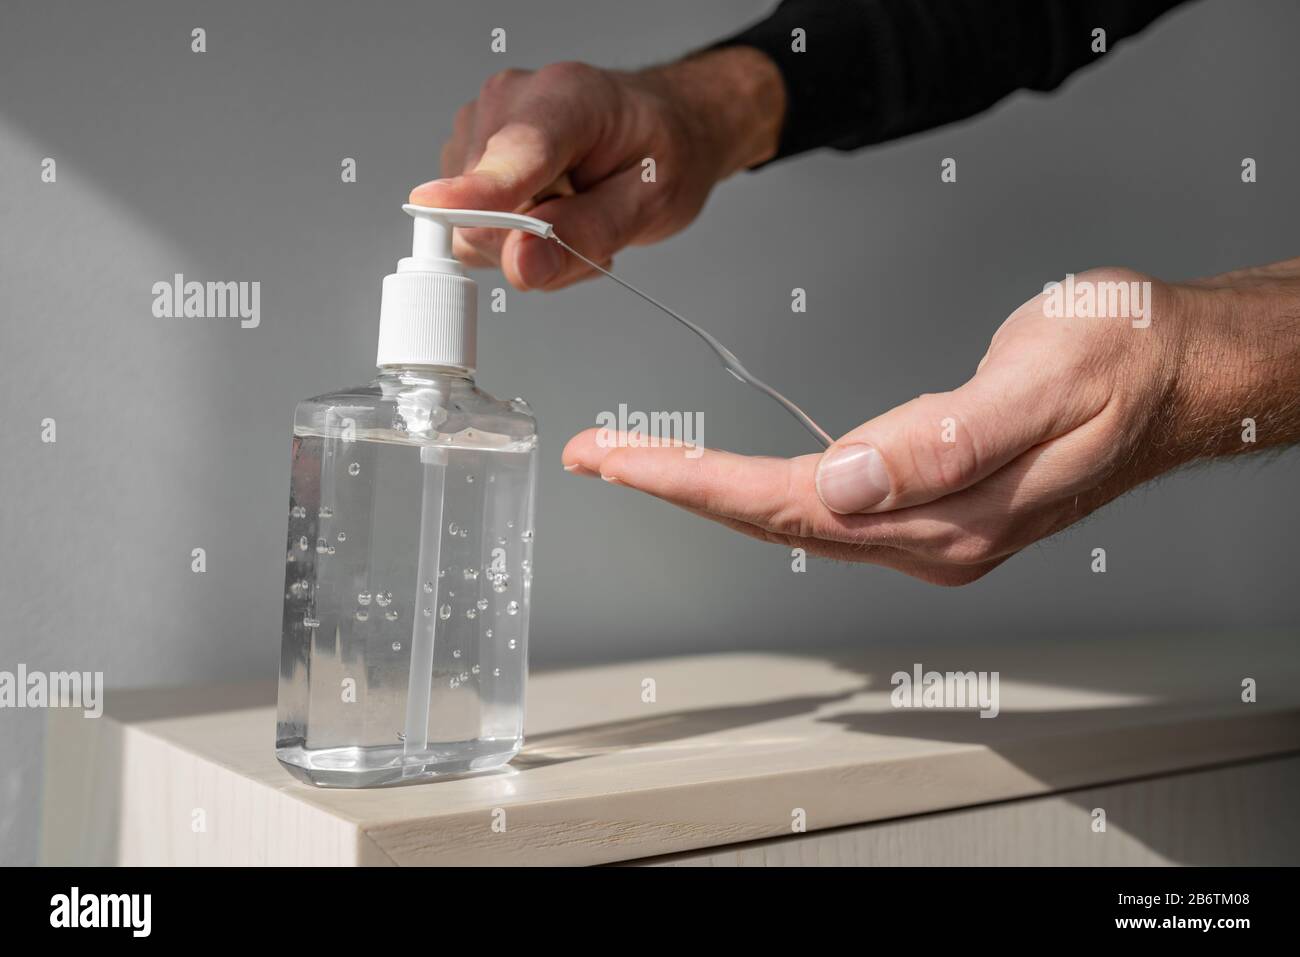 Desinfectante de manos gel de alcohol frotar manos limpias higiene prevención del brote del virus coronavirus. Hombre usando una botella de jabón desinfectante antibacteriano. Foto de stock